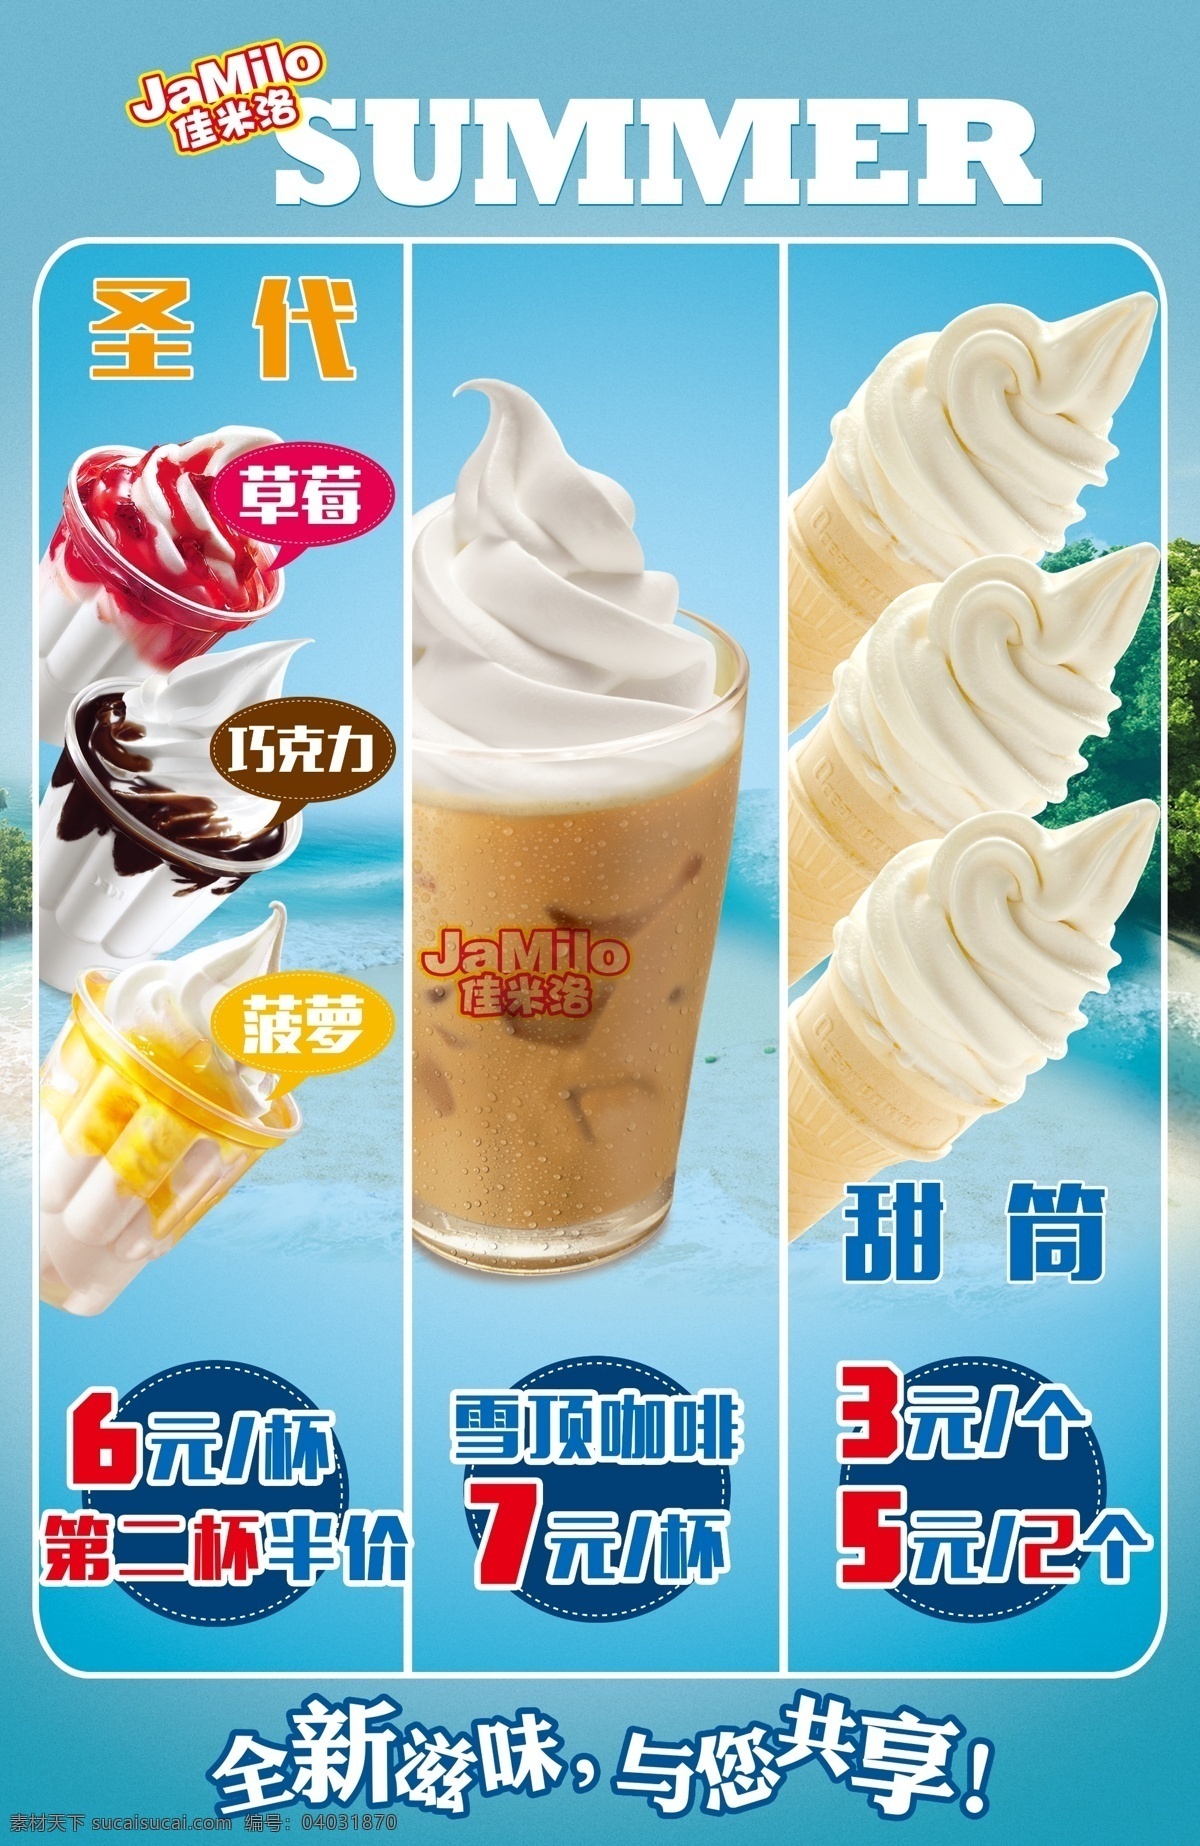 冰激淋灯箱 冰激淋展架 冰激淋海报 圣代海报 雪顶咖啡海报 甜筒海报 快餐店海报 海报